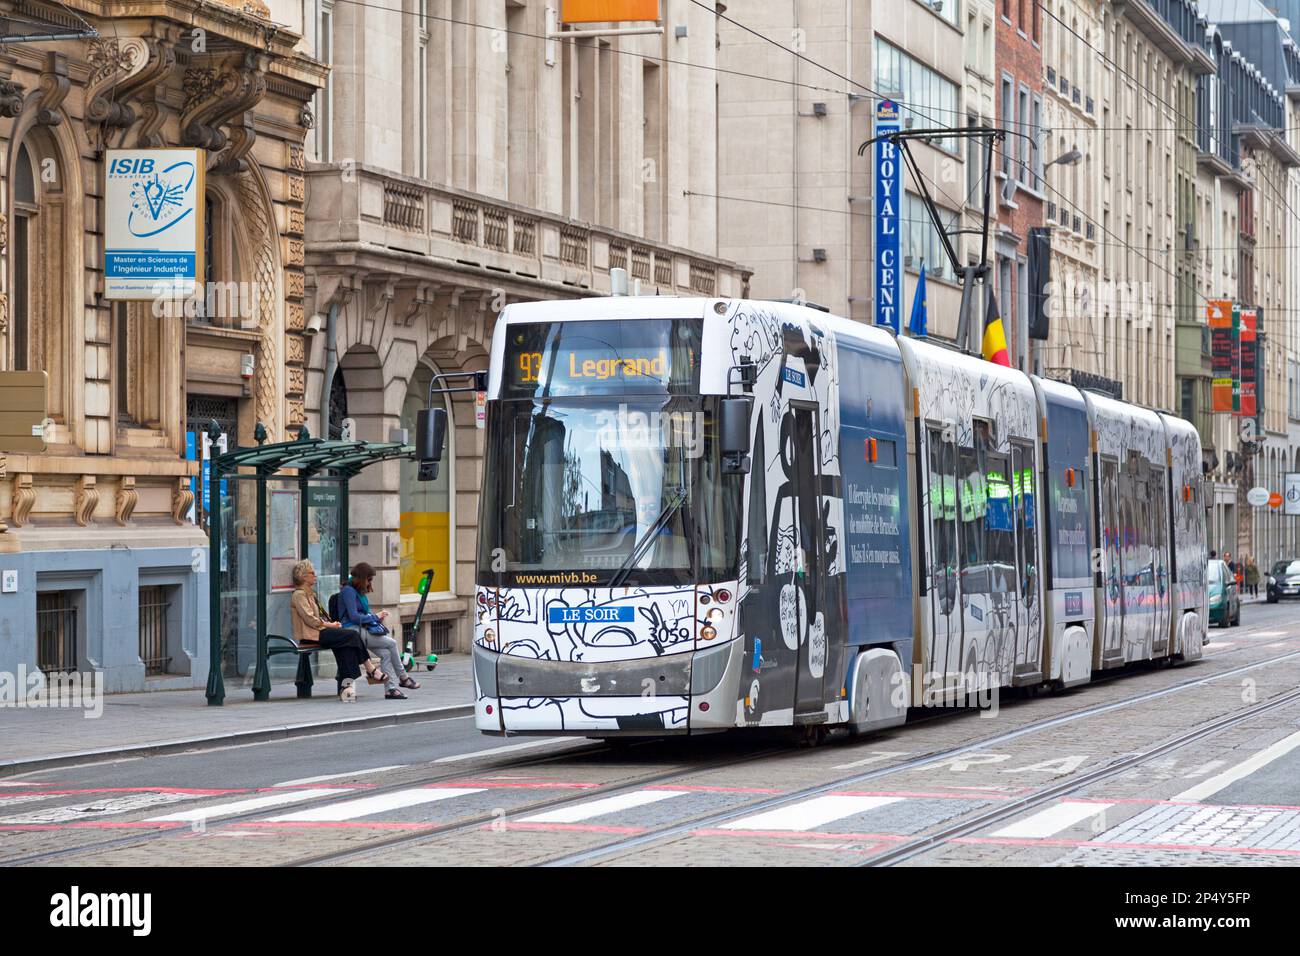 Bruxelles, Belgique - 02 juillet 2019 : tramway de la ligne 93 dans le centre-ville méritant. Banque D'Images